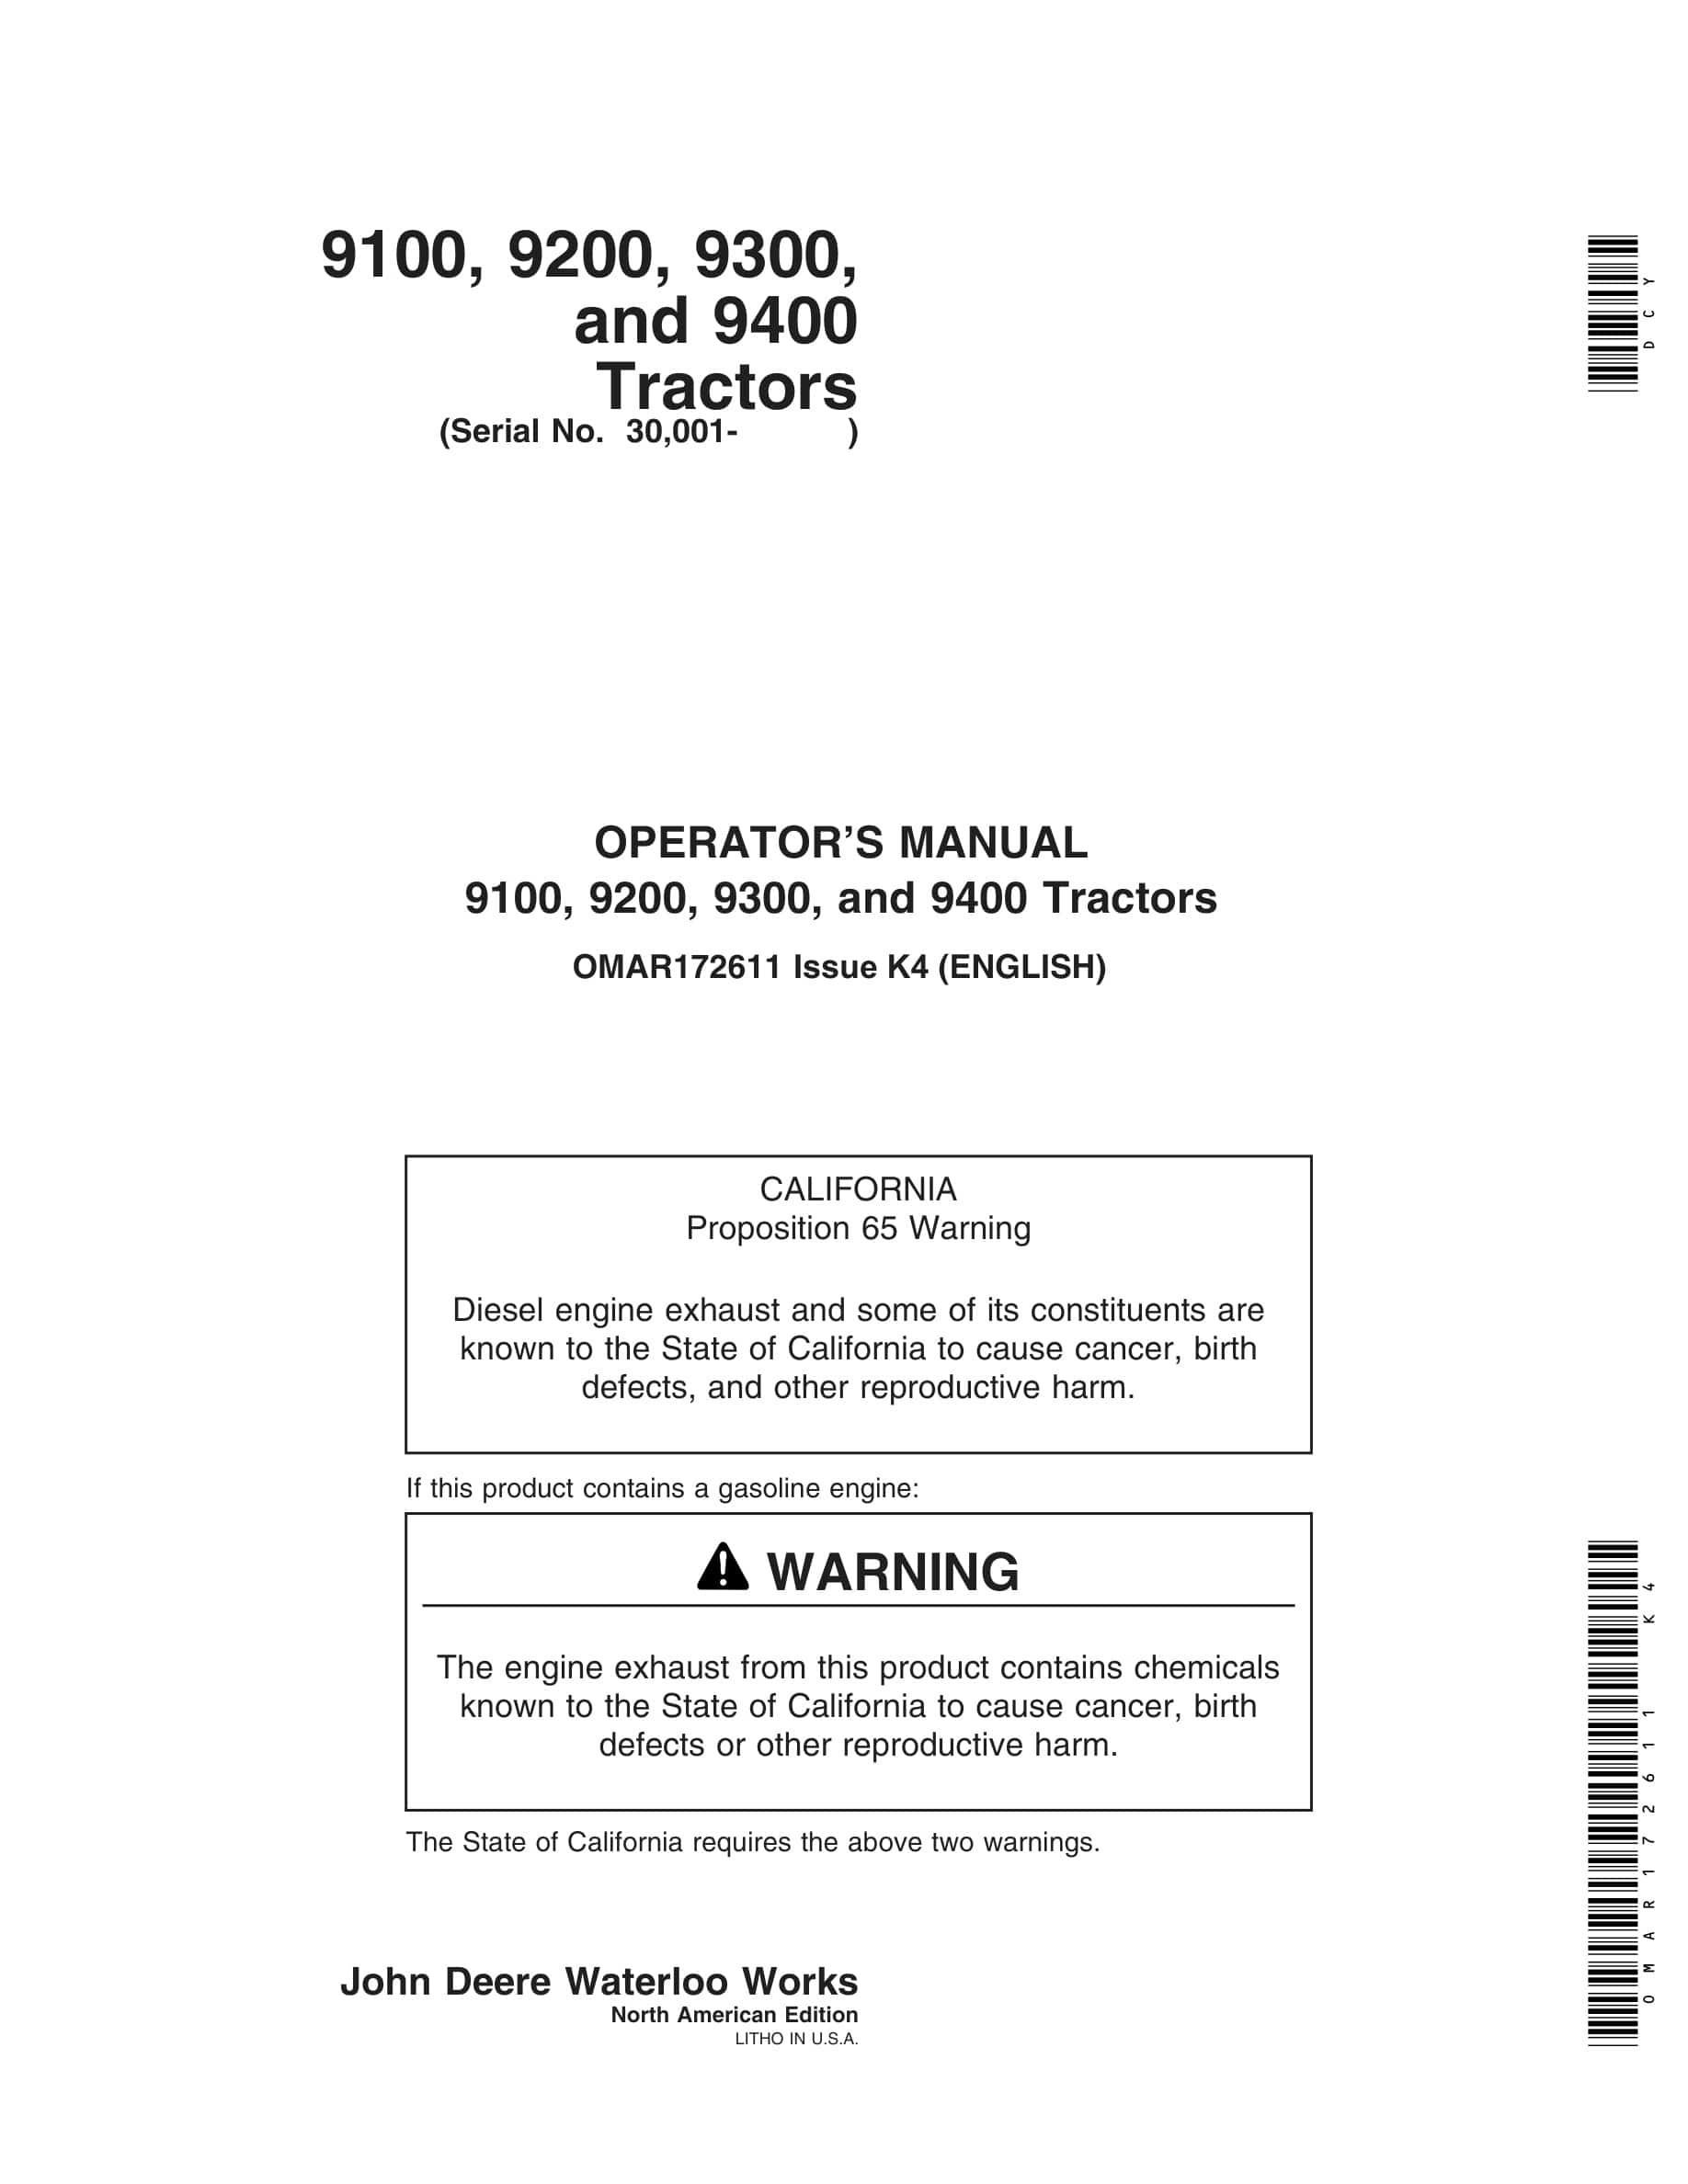 John Deere 9100, 9200, 9300, and 9400 Tractor Operator Manual OMAR172611-1